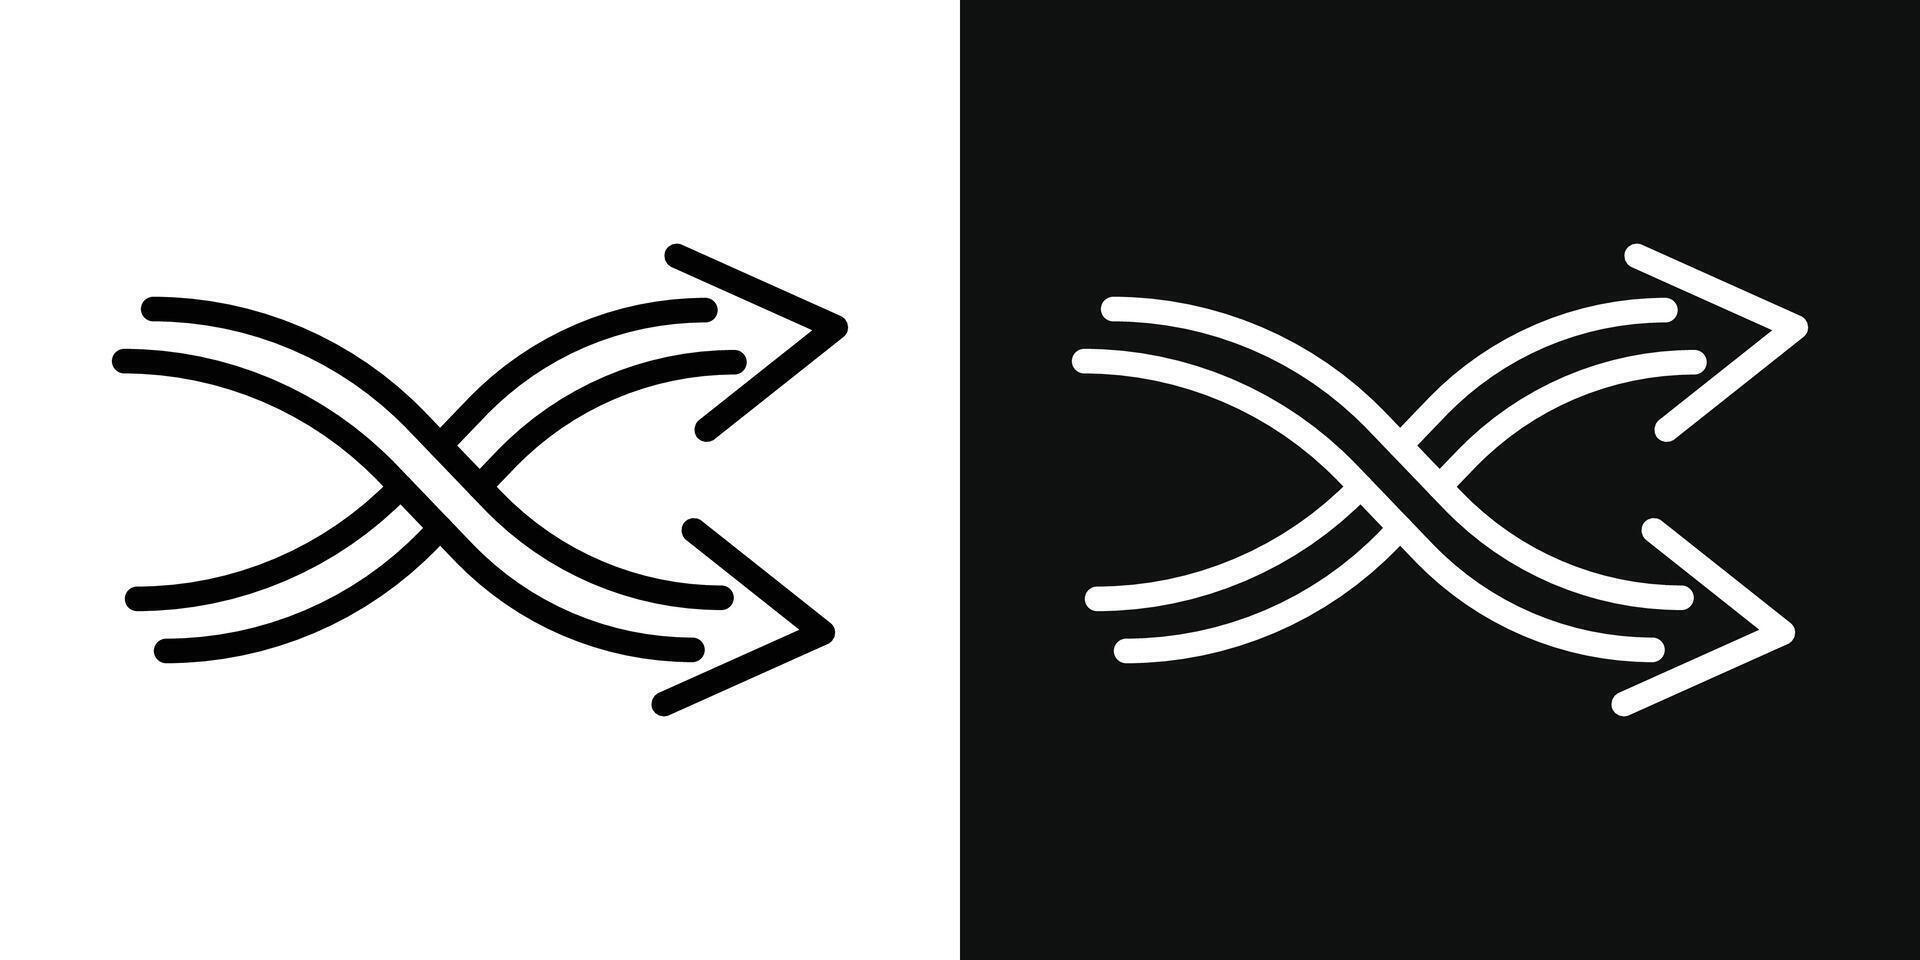 Shuffle arrow icon vector